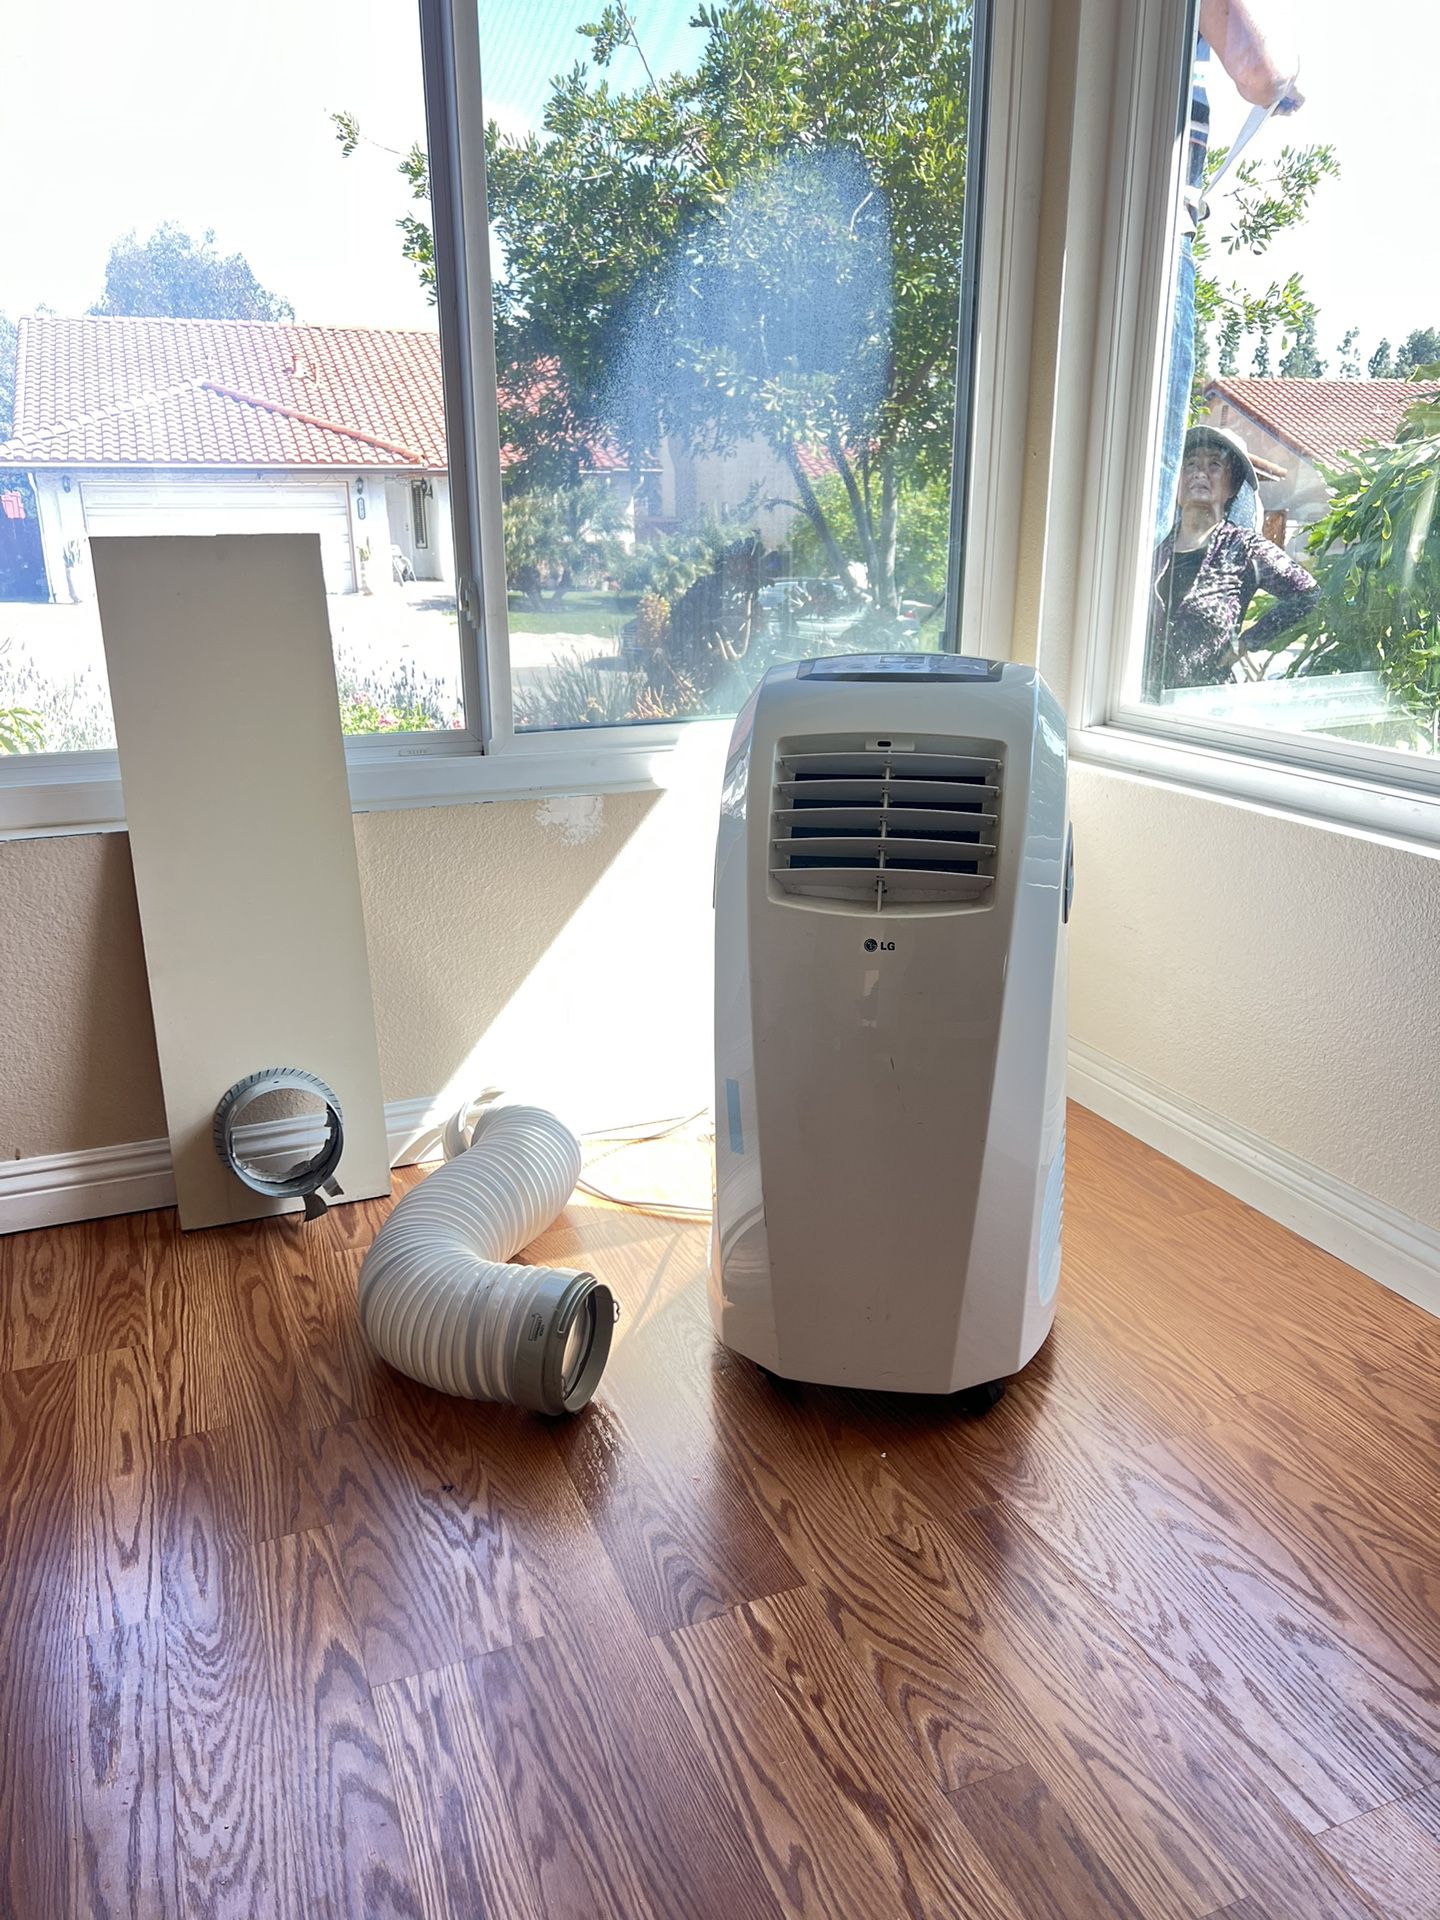 Portable Air Conditioner AC Unit 